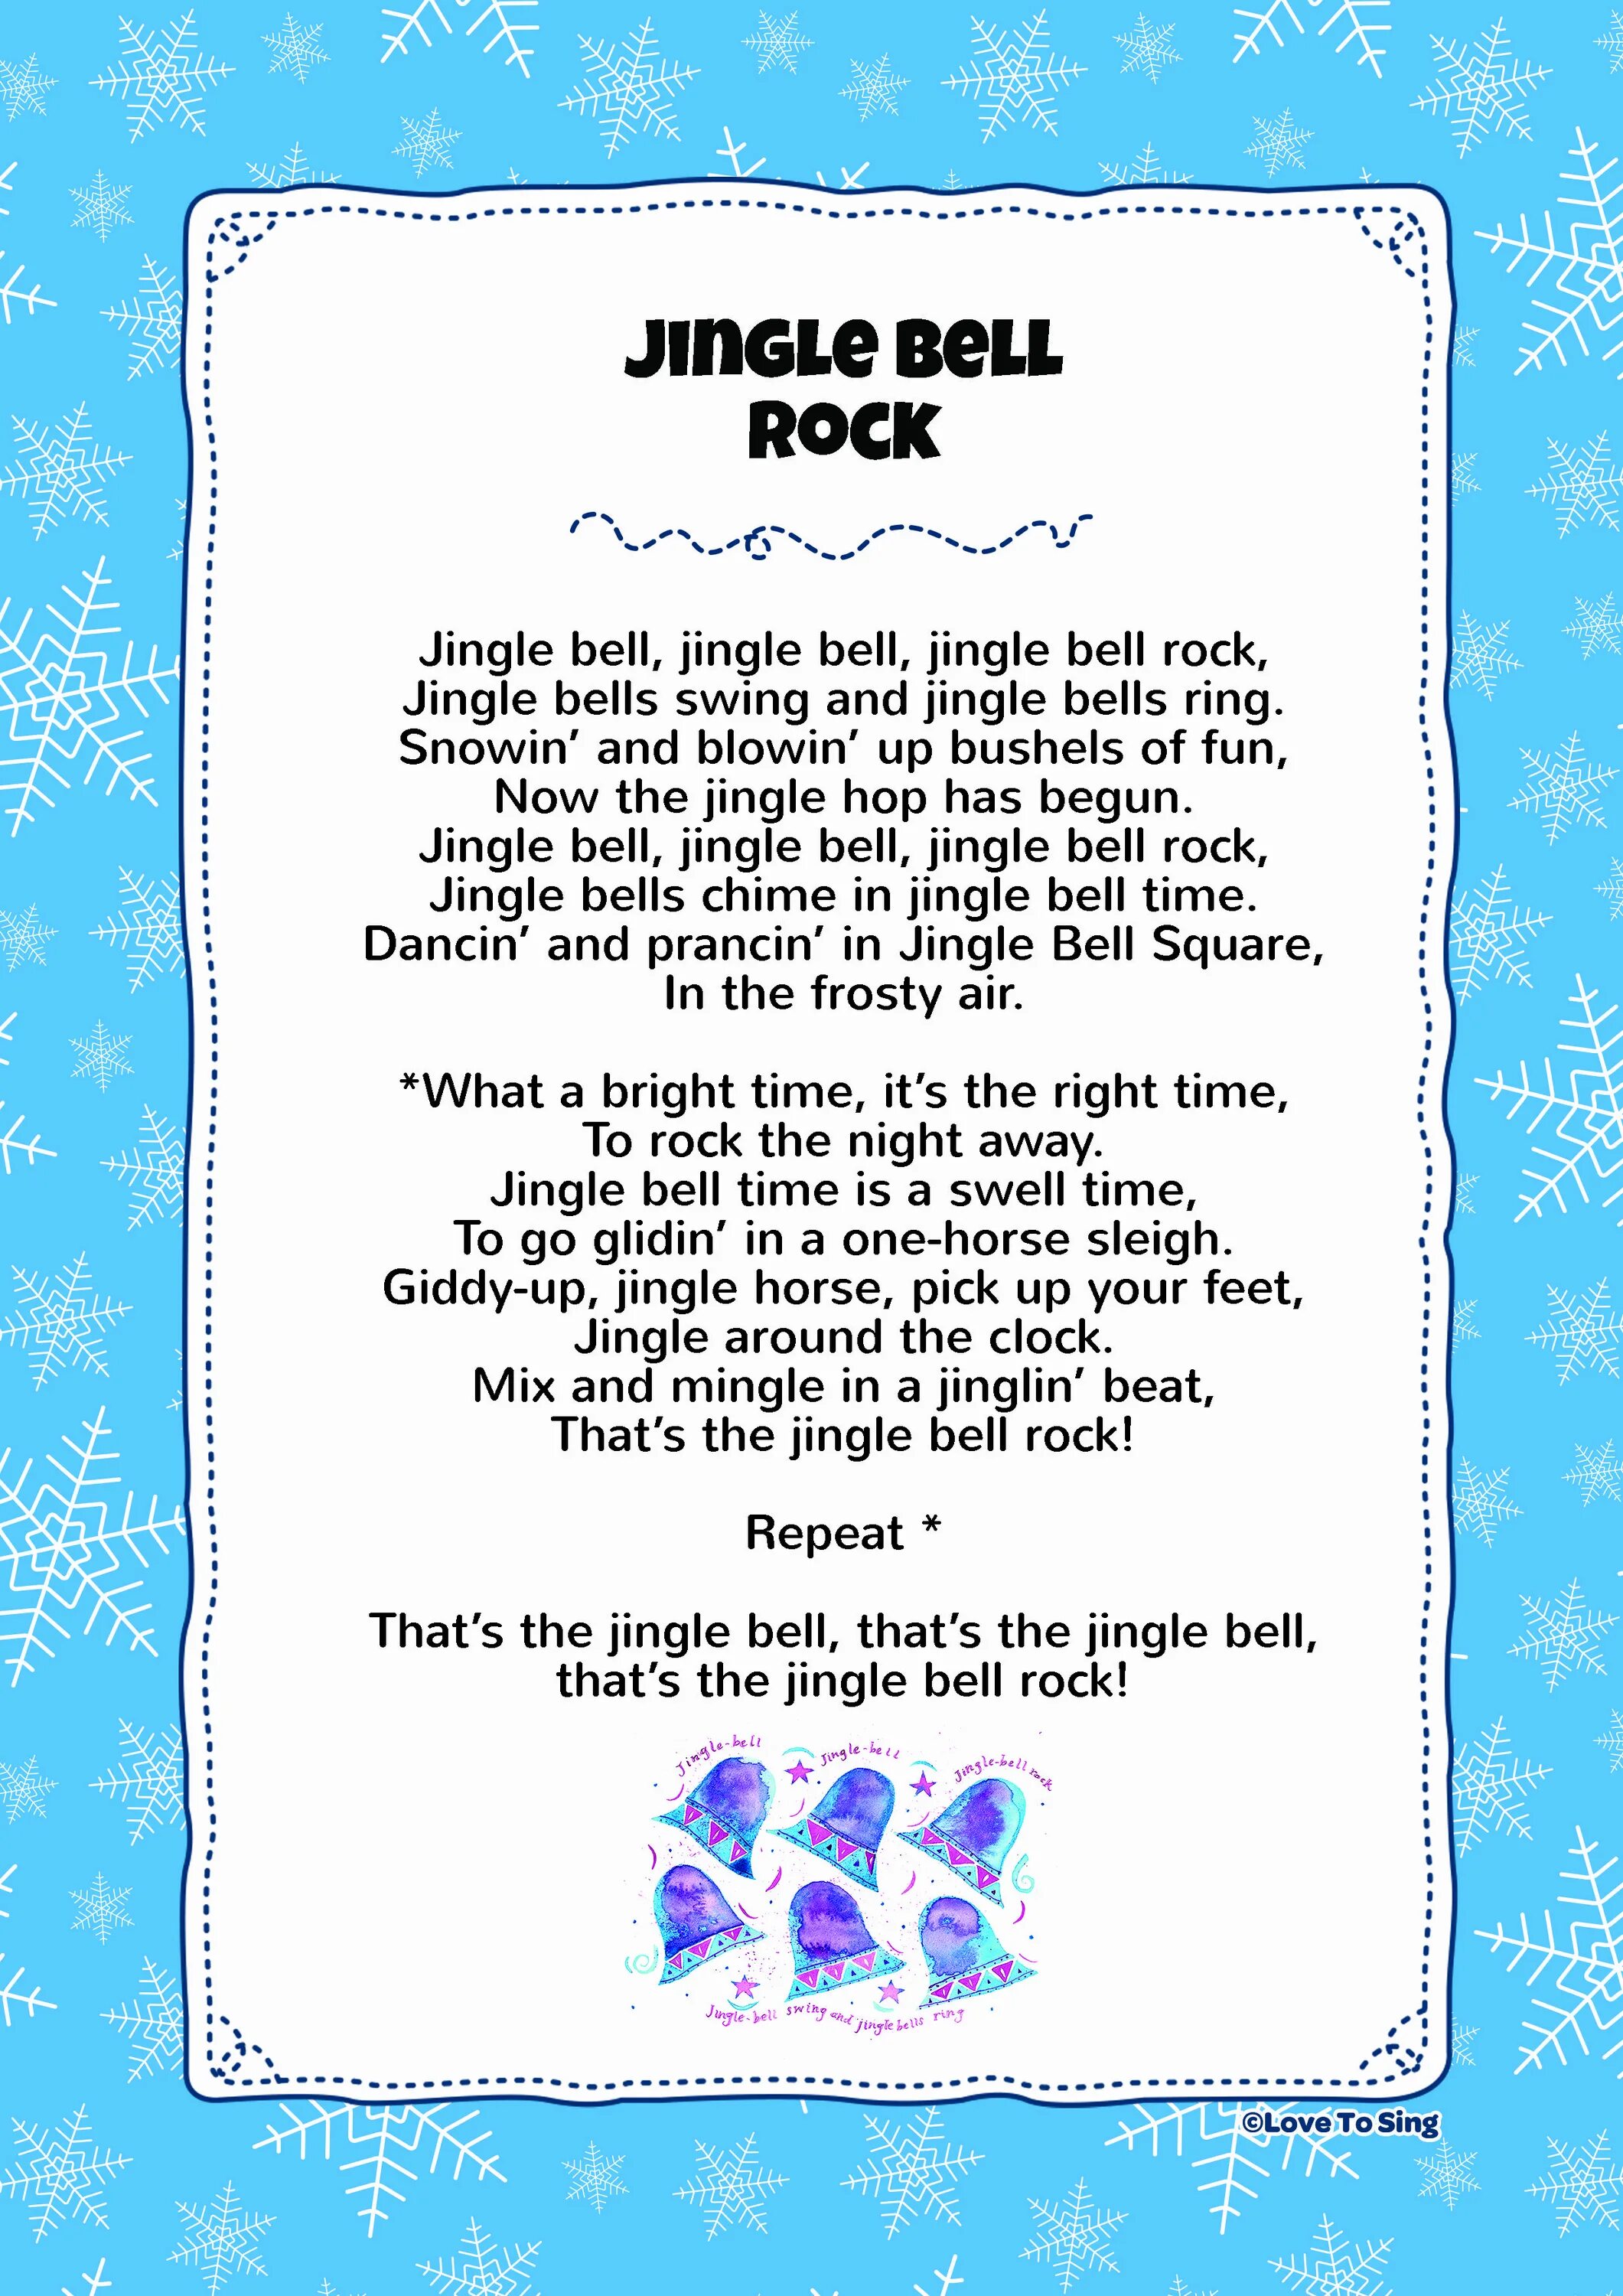 Jingle Bells Rock слова. Джингл белс рок. Jingle Bells Jingle Bells Jingle Bells Rock текст. Текст песни Jingle Bells Rock. Джингл белс слова